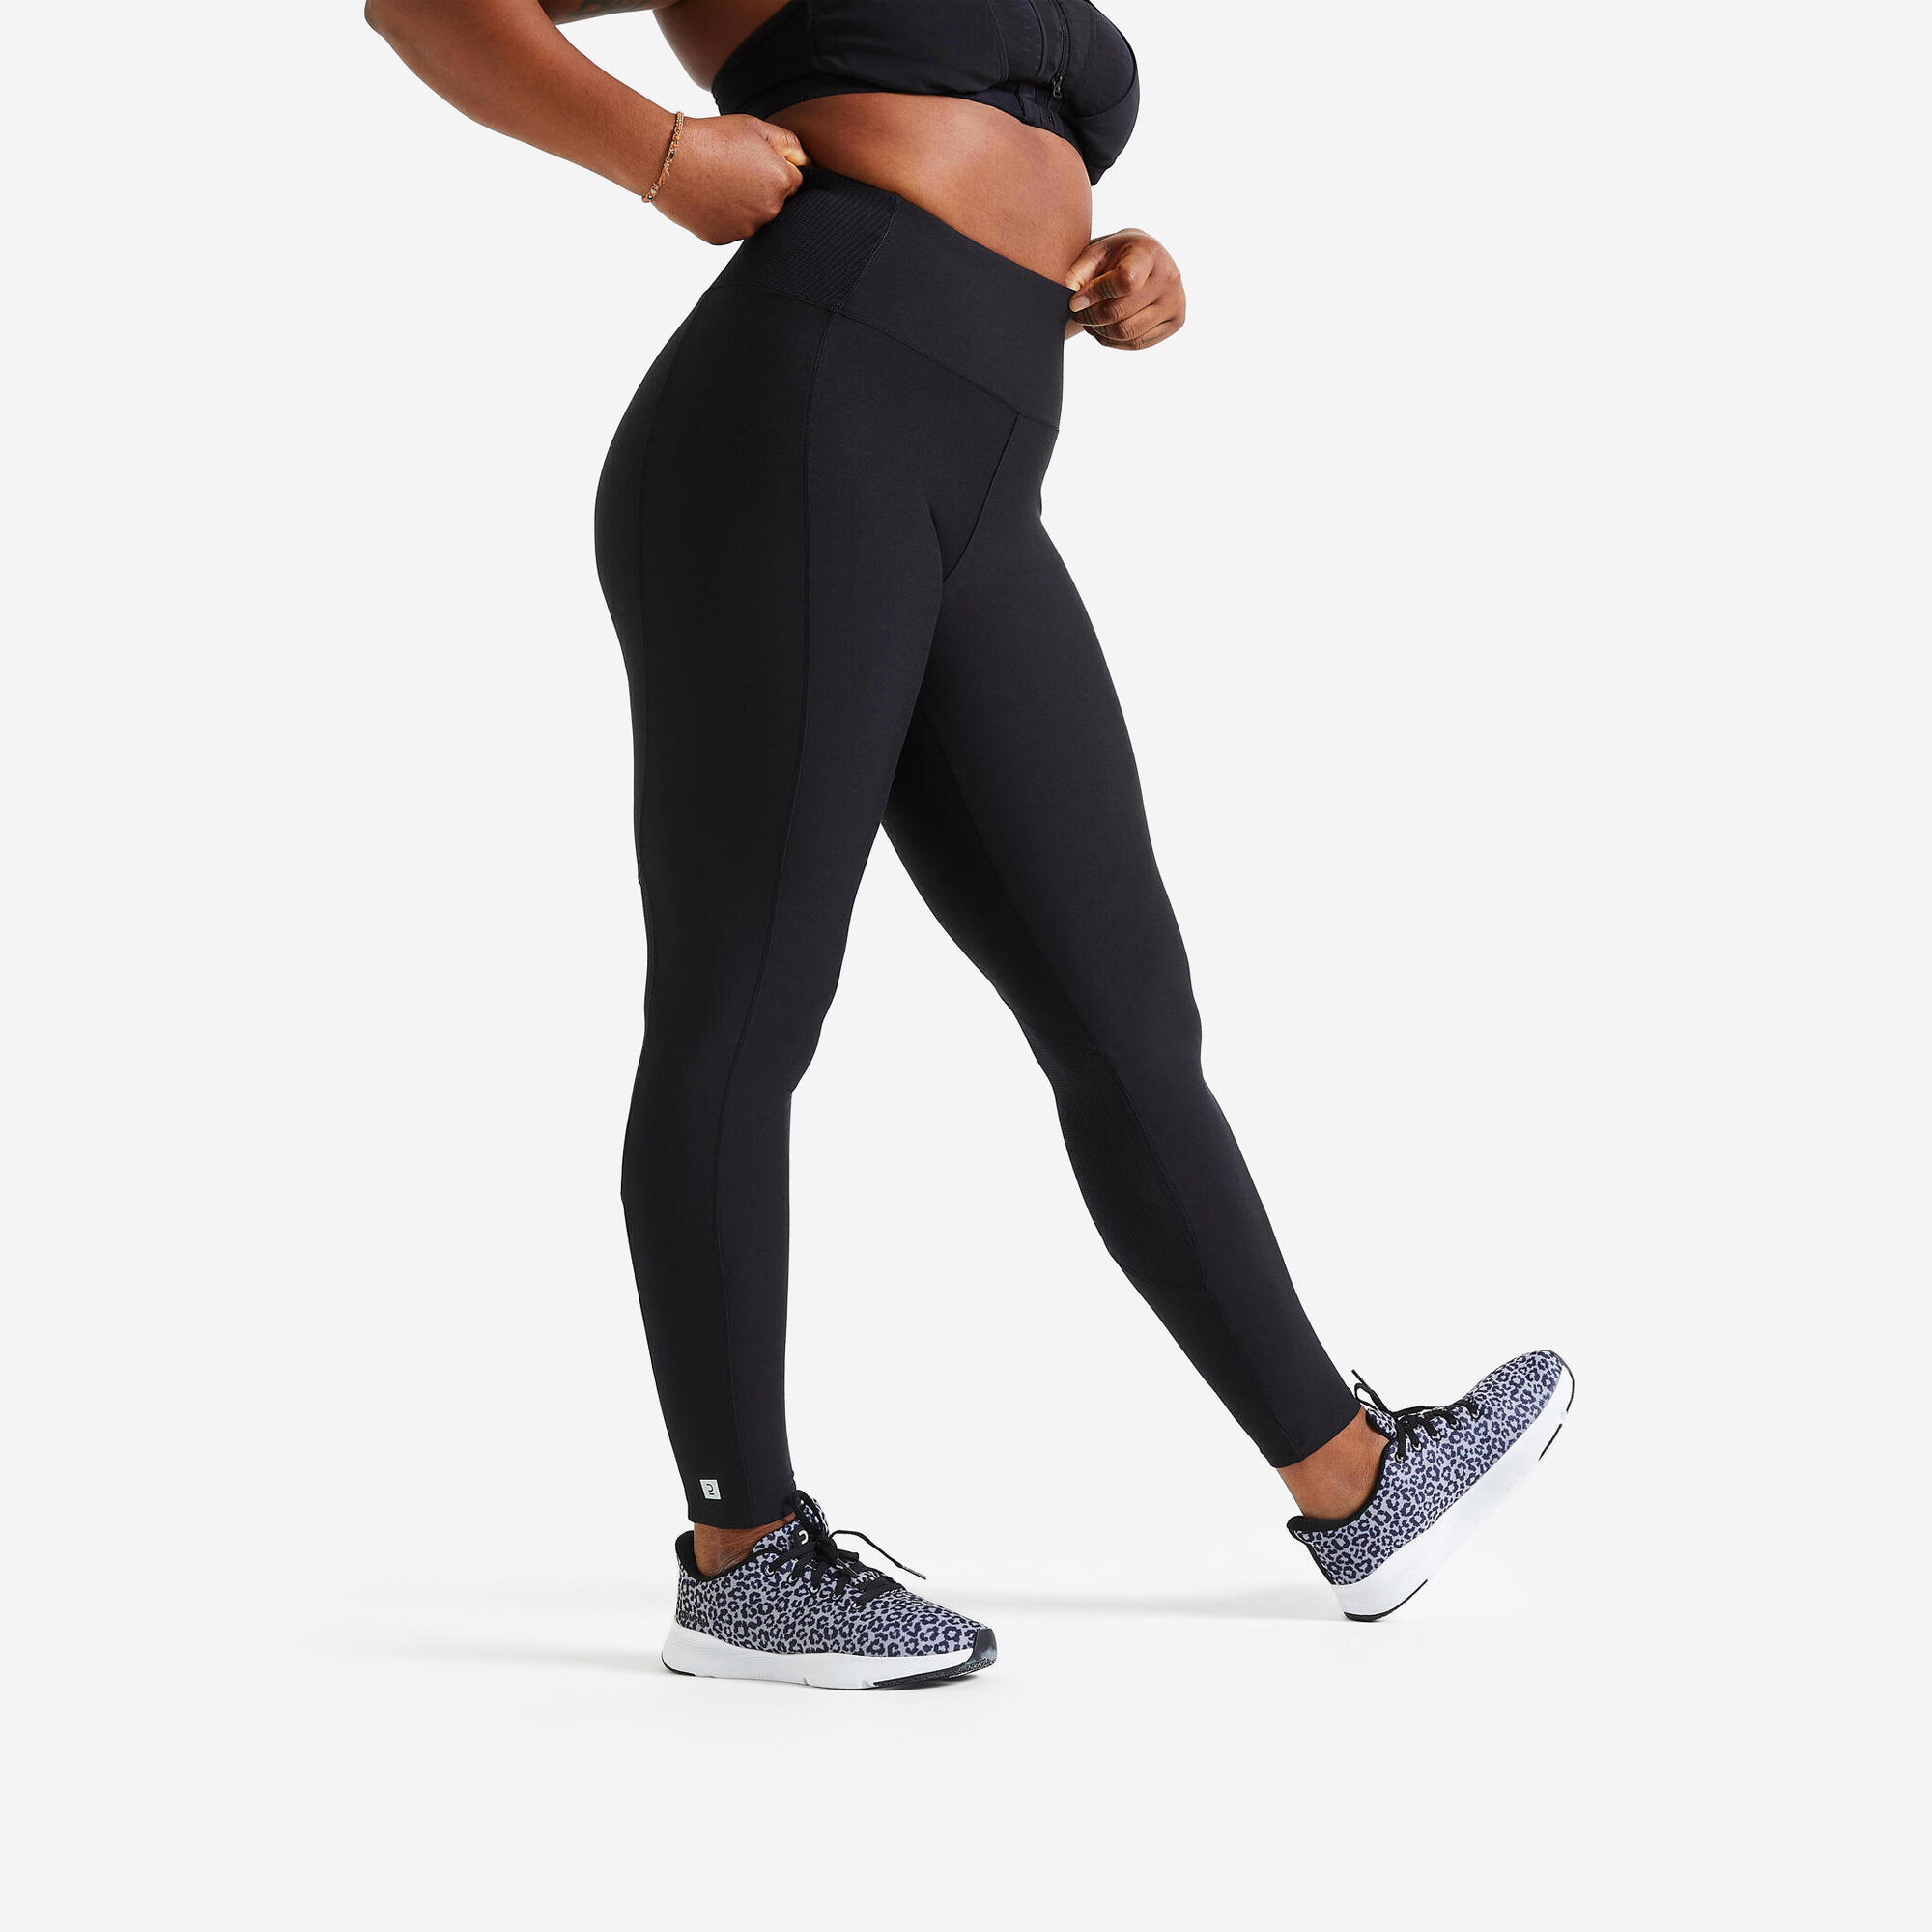 Women's phone pocket fitness high-waisted leggings, black 1/7